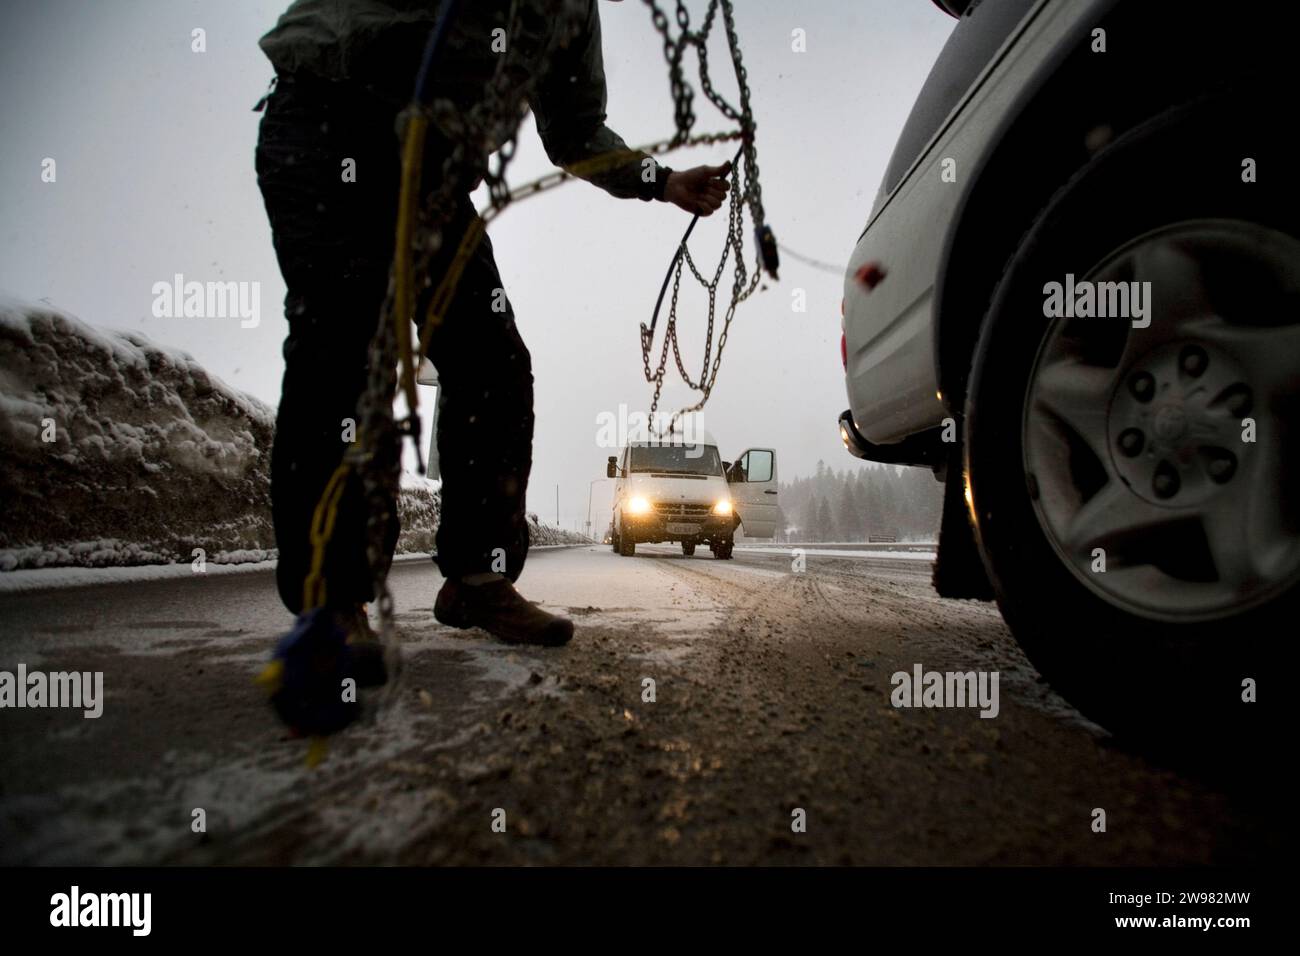 Un homme tente de mettre des chaînes sur son véhicule dans la neige, Reno, Nevada. Banque D'Images